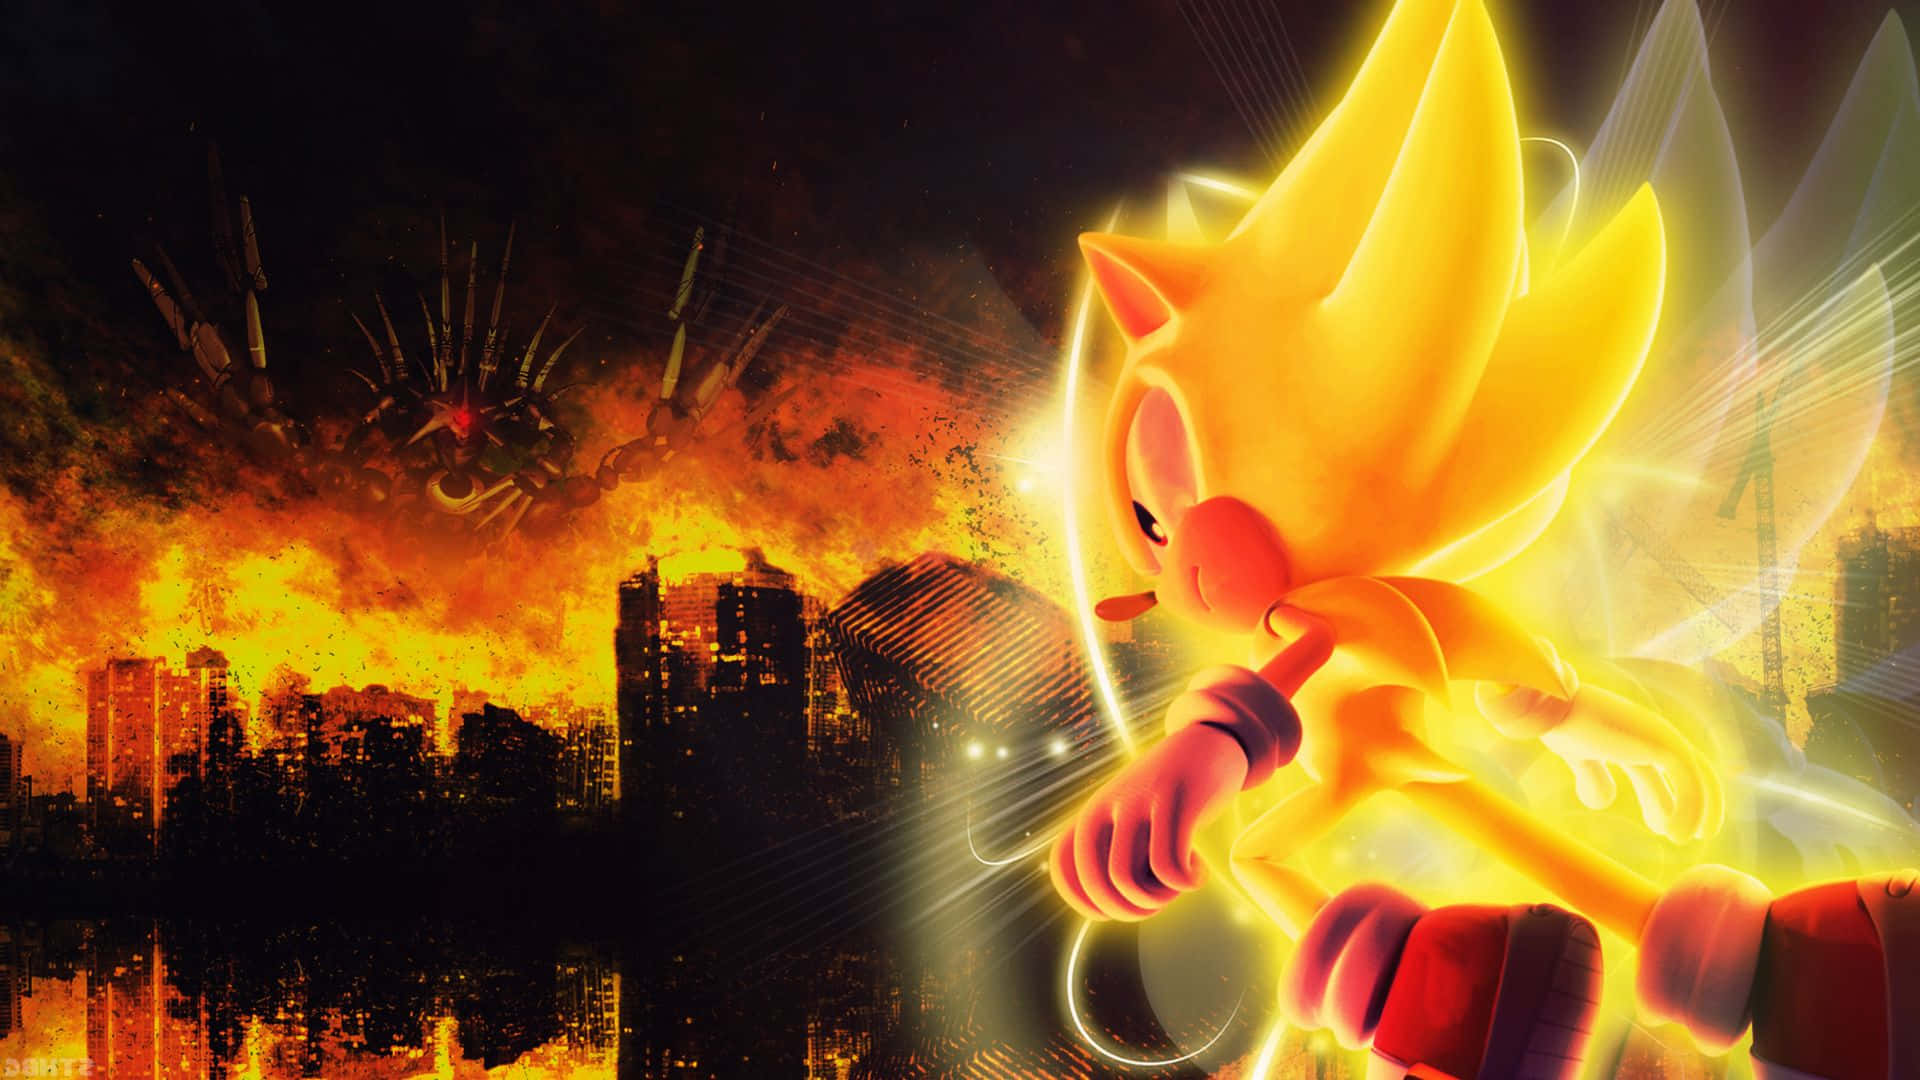 Sonic the Hedgehog speeding through City Escape Wallpaper